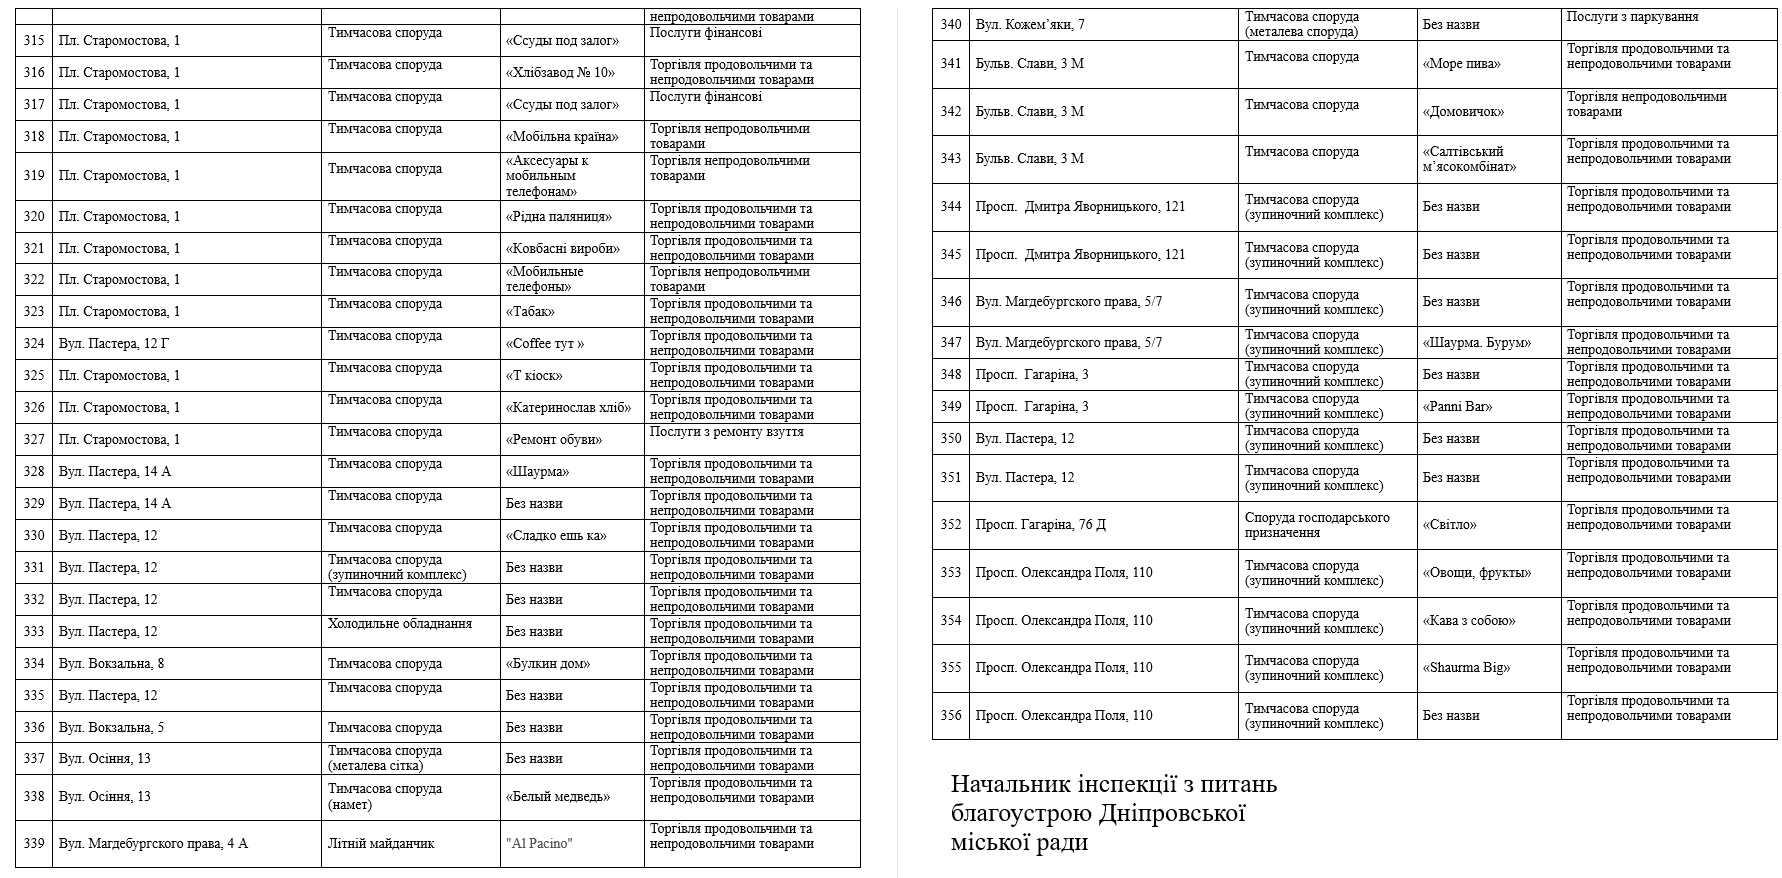 Список временных сооружений, которые демонтируют в Днепре